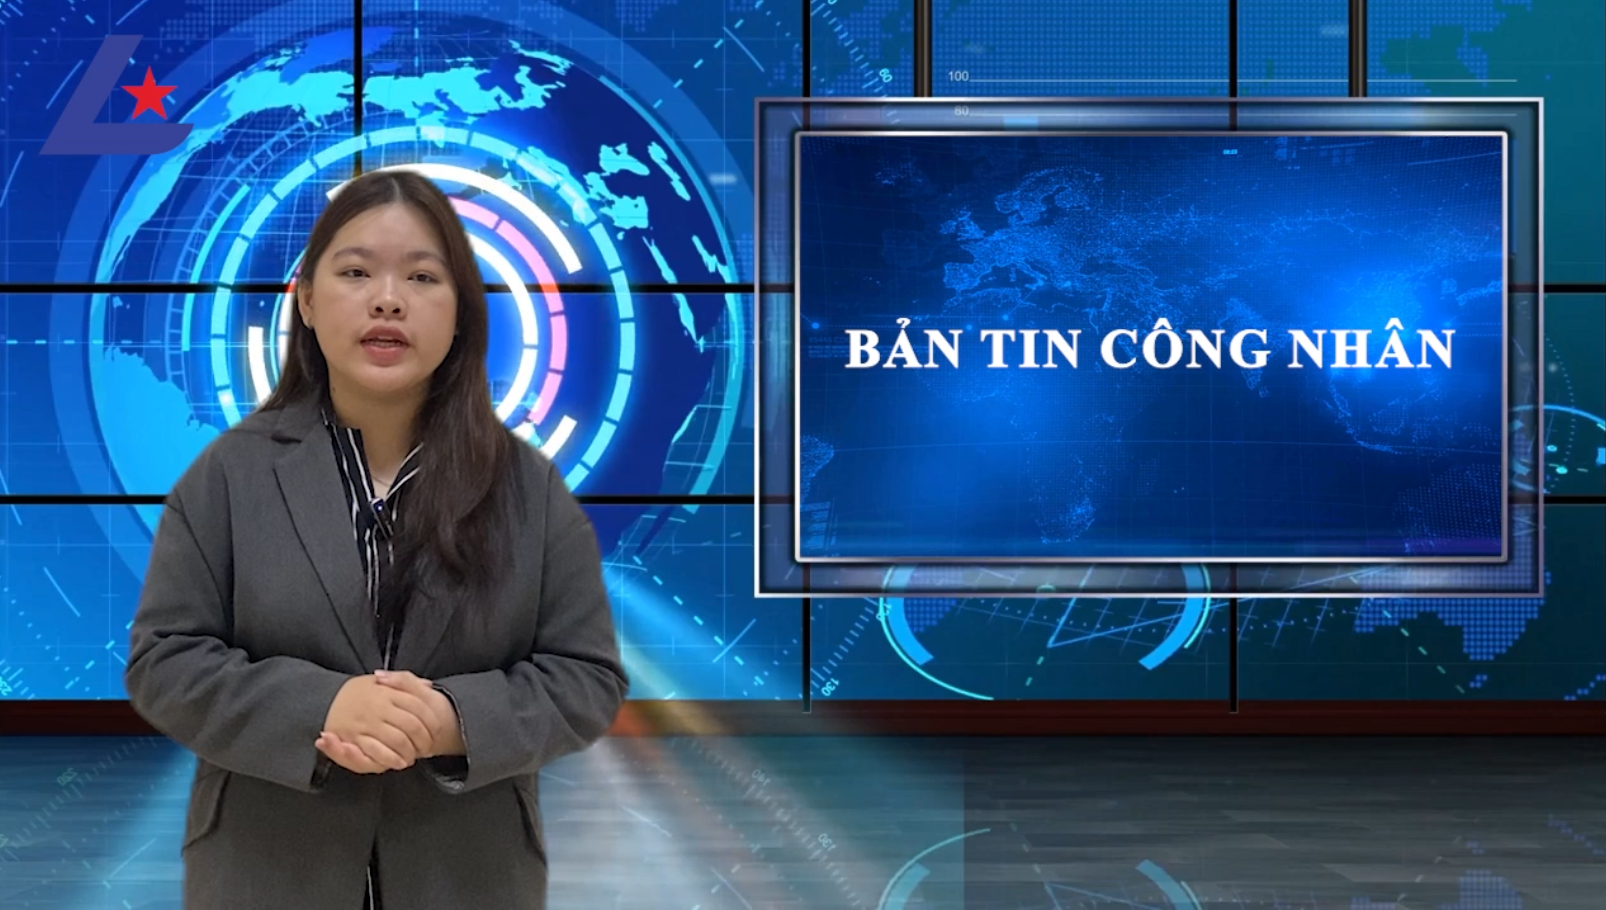 Bản tin công nhân: Thủ tướng Phạm Minh Chính: Không để ai không có Tết